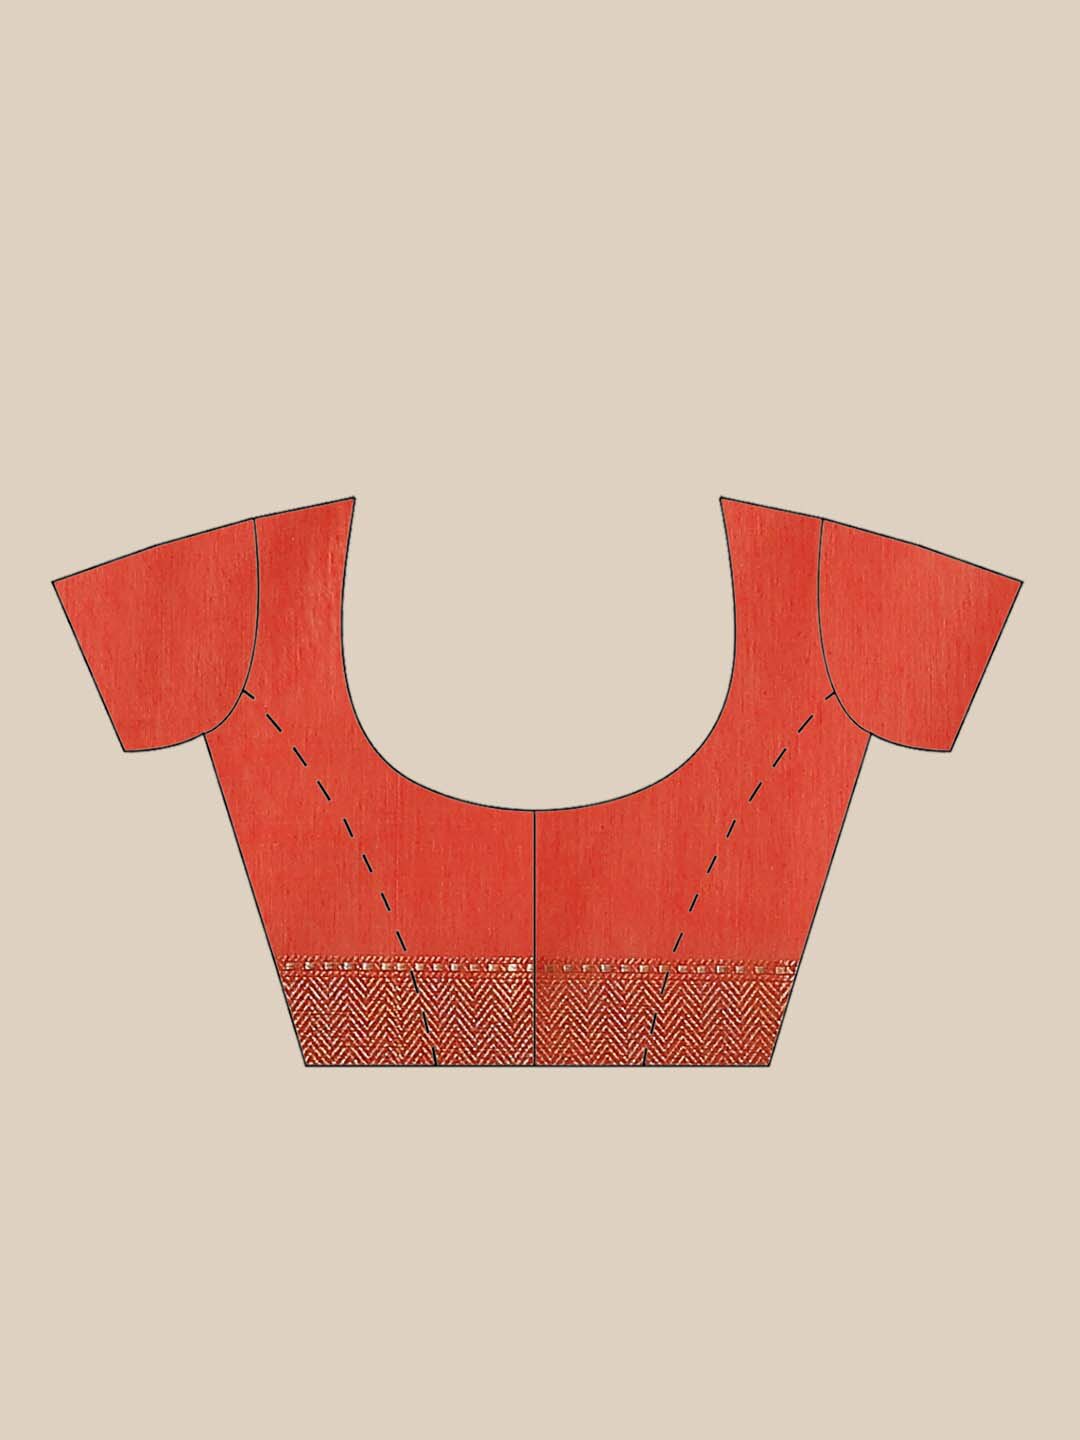 Indethnic Banarasi Rust Woven Design Daily Wear Saree - Blouse Piece View